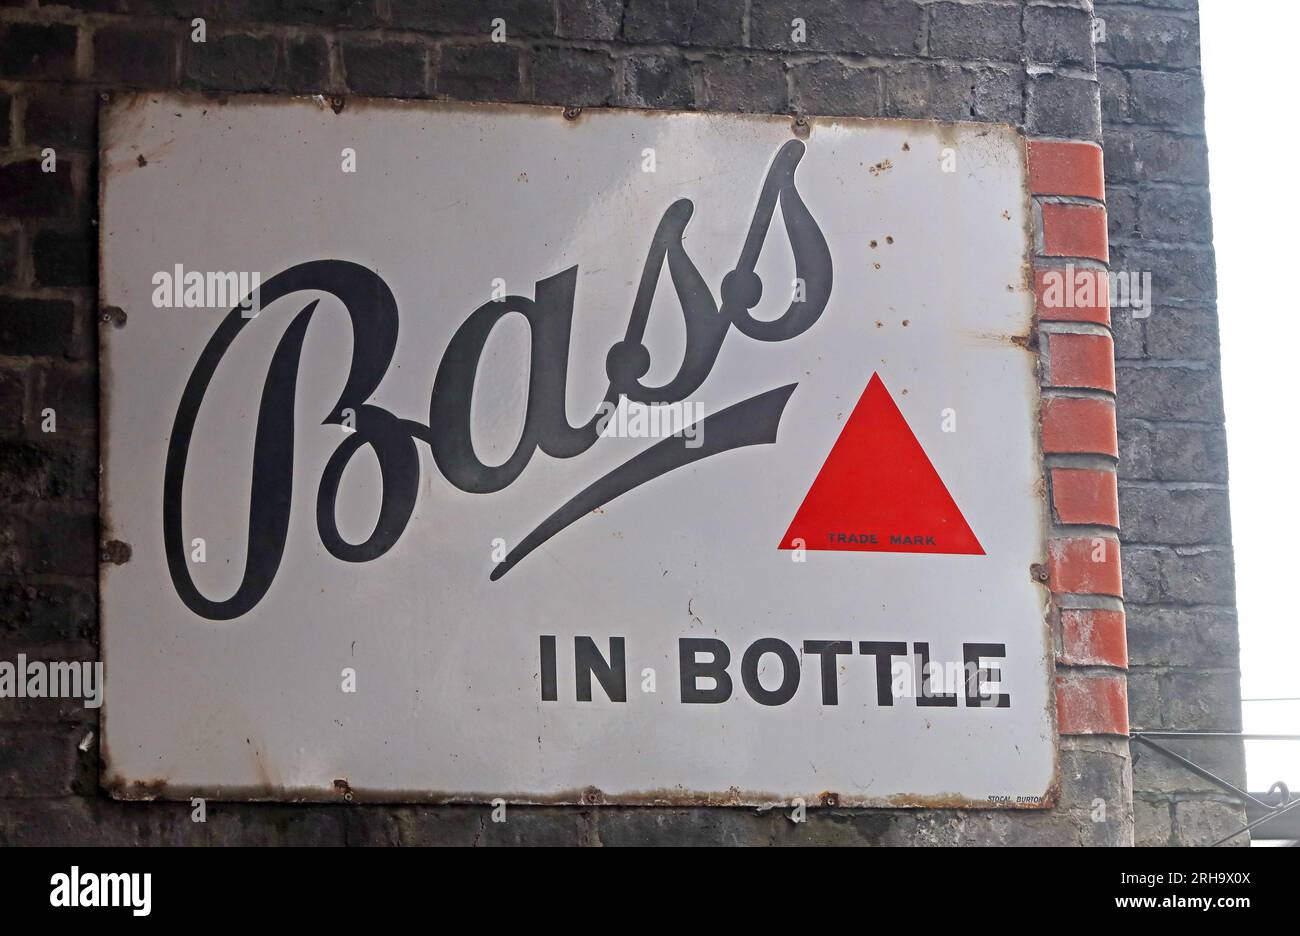 Célèbre marque Bass in Bottle, triangle rouge 1875, sur une enseigne en émail métallique, Wigan, Lancashire, Angleterre, Royaume-Uni Banque D'Images